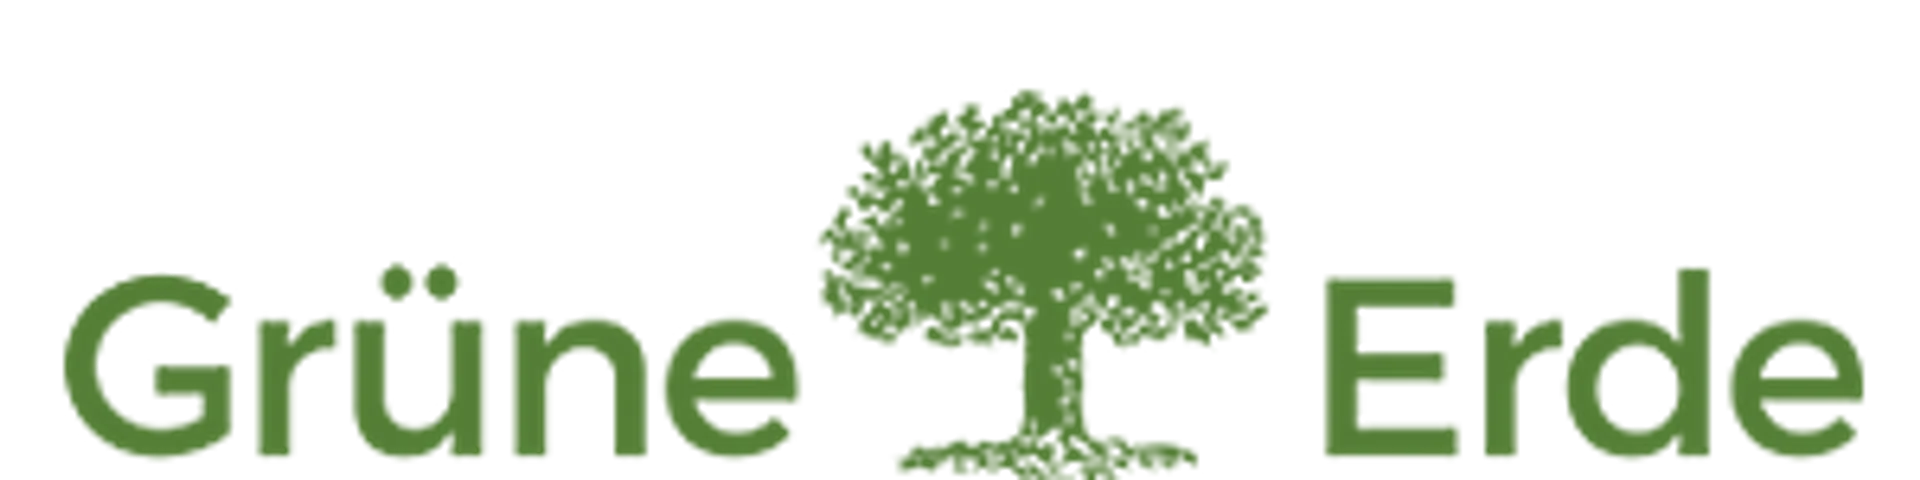 GRÜNE ERDE logo die aktuell Flugblatt